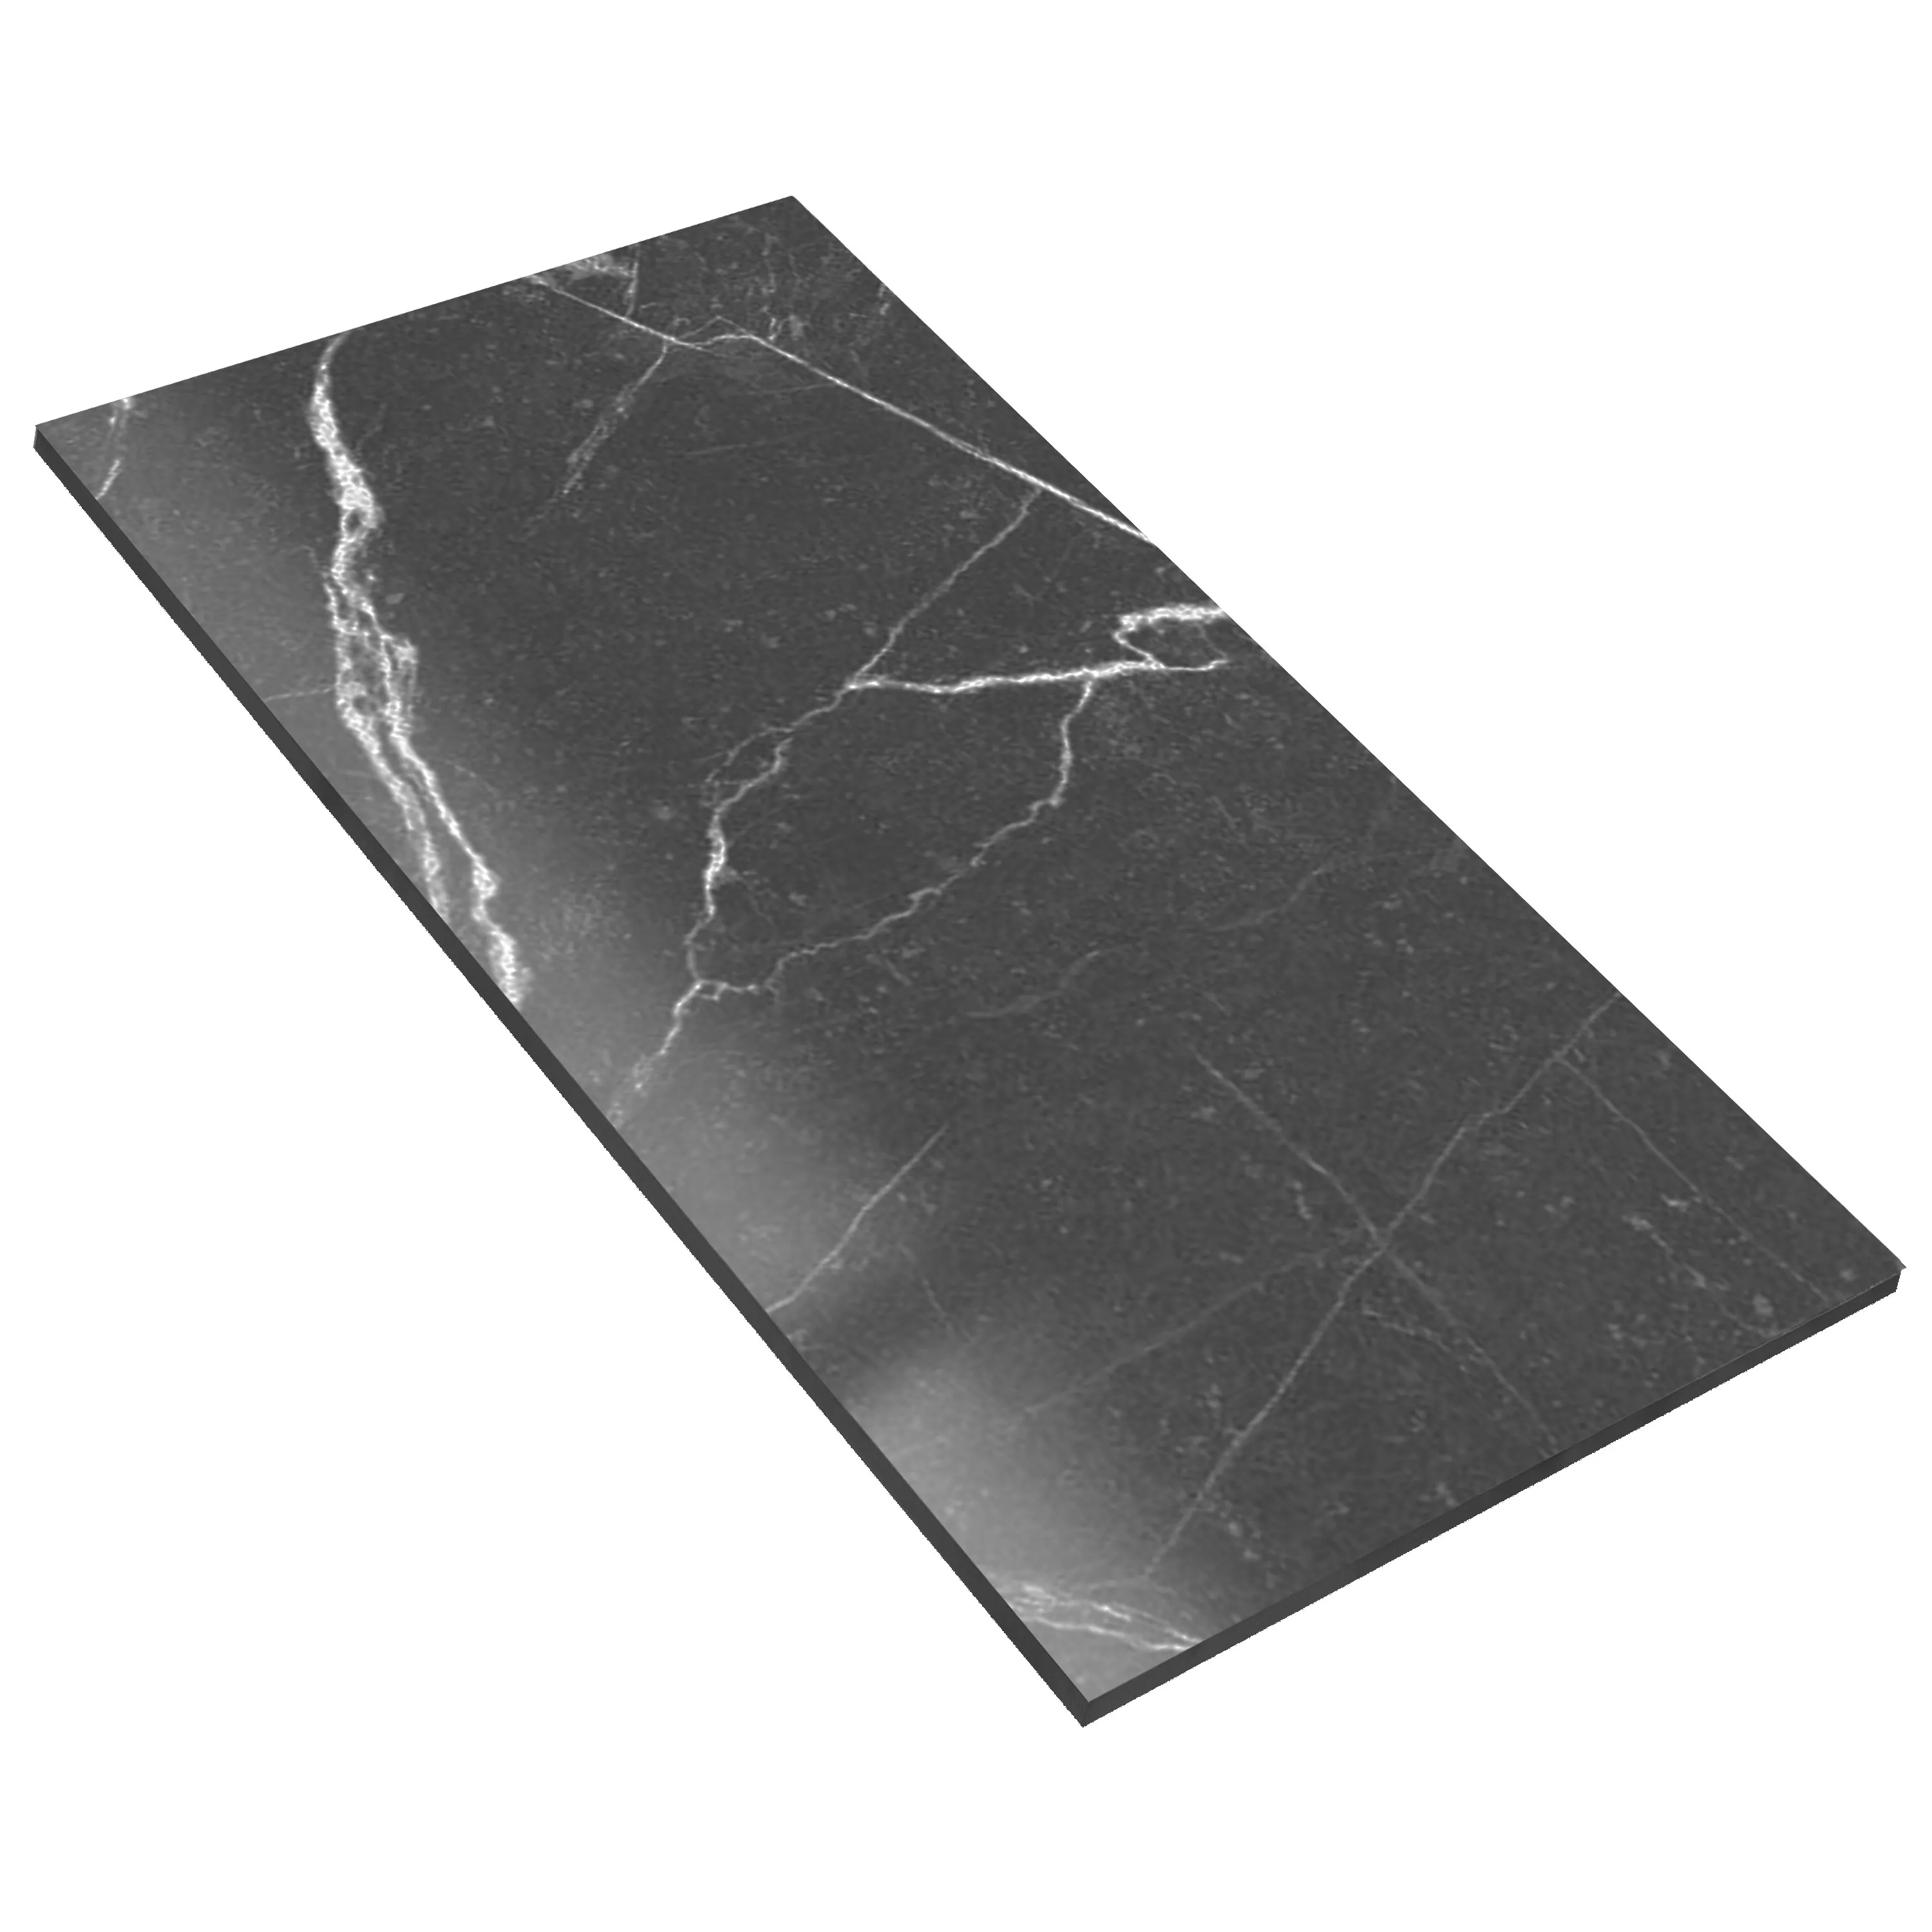 Πλακάκια Δαπέδου Santana Μαρμάρινη Όψη Αμεμπτος Σκούρο Γκρι 60x120cm